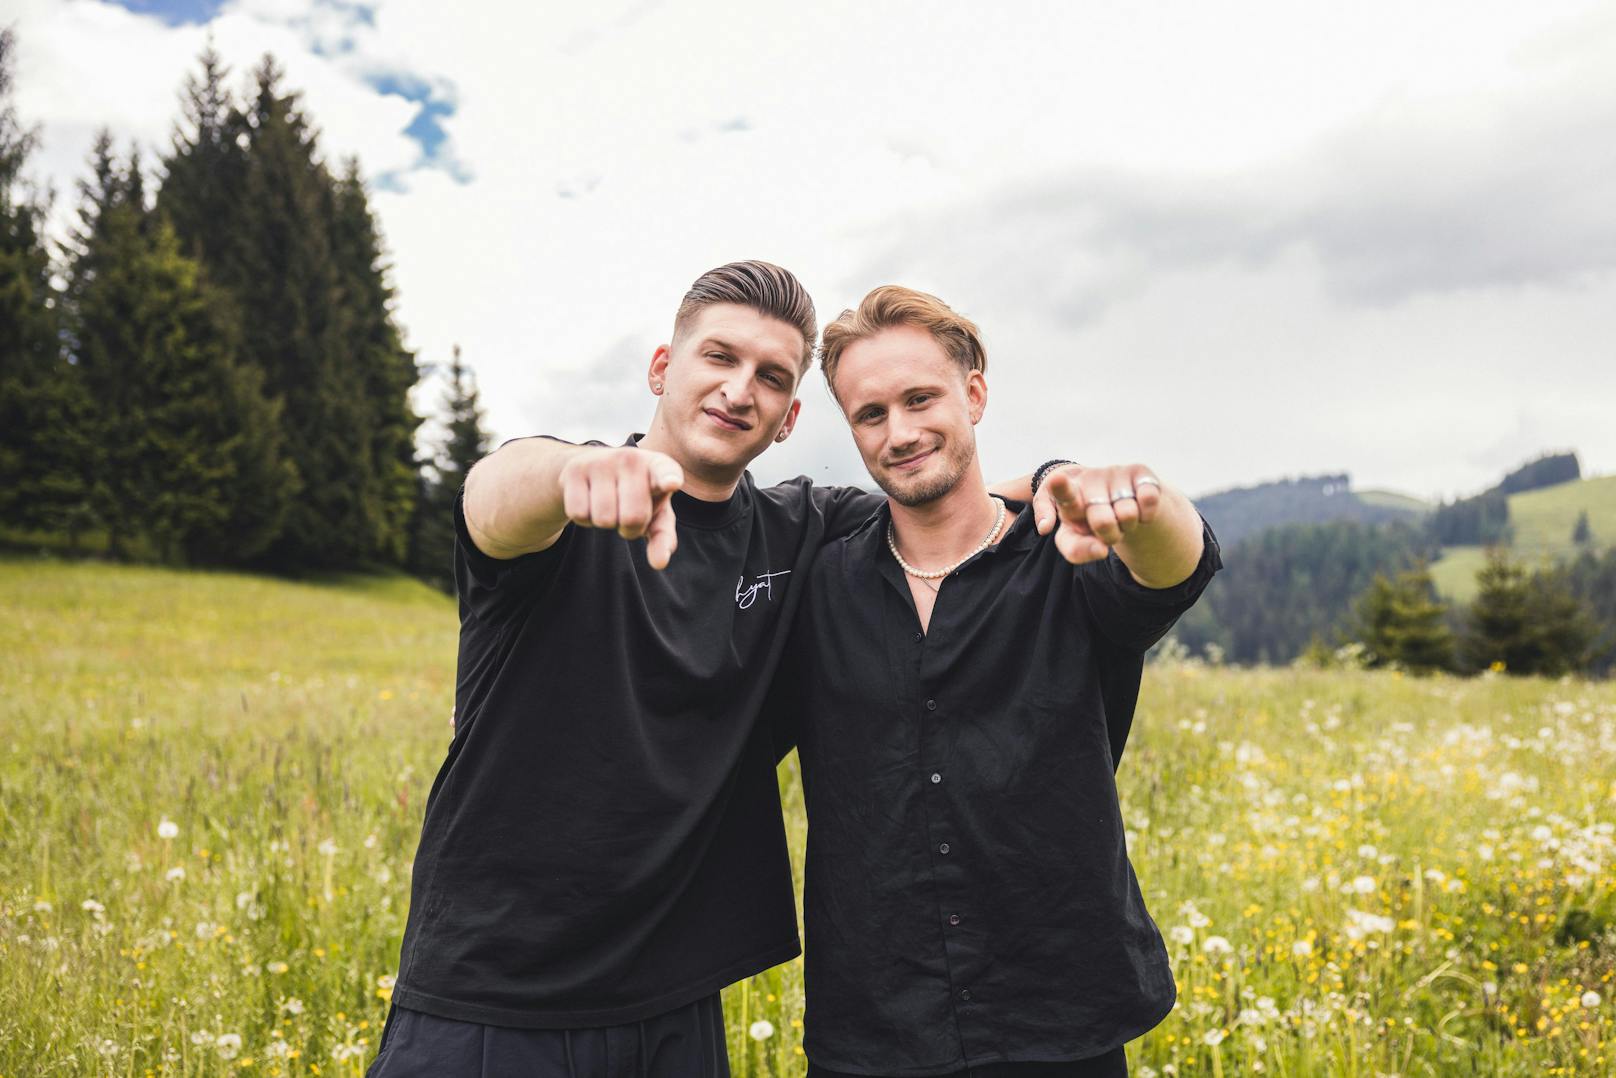 Wiener Social-Media-Star "Satans Bratan" und Kumpel Mio sind das zweite verkündete Paar von "Forsthaus Rampensau".